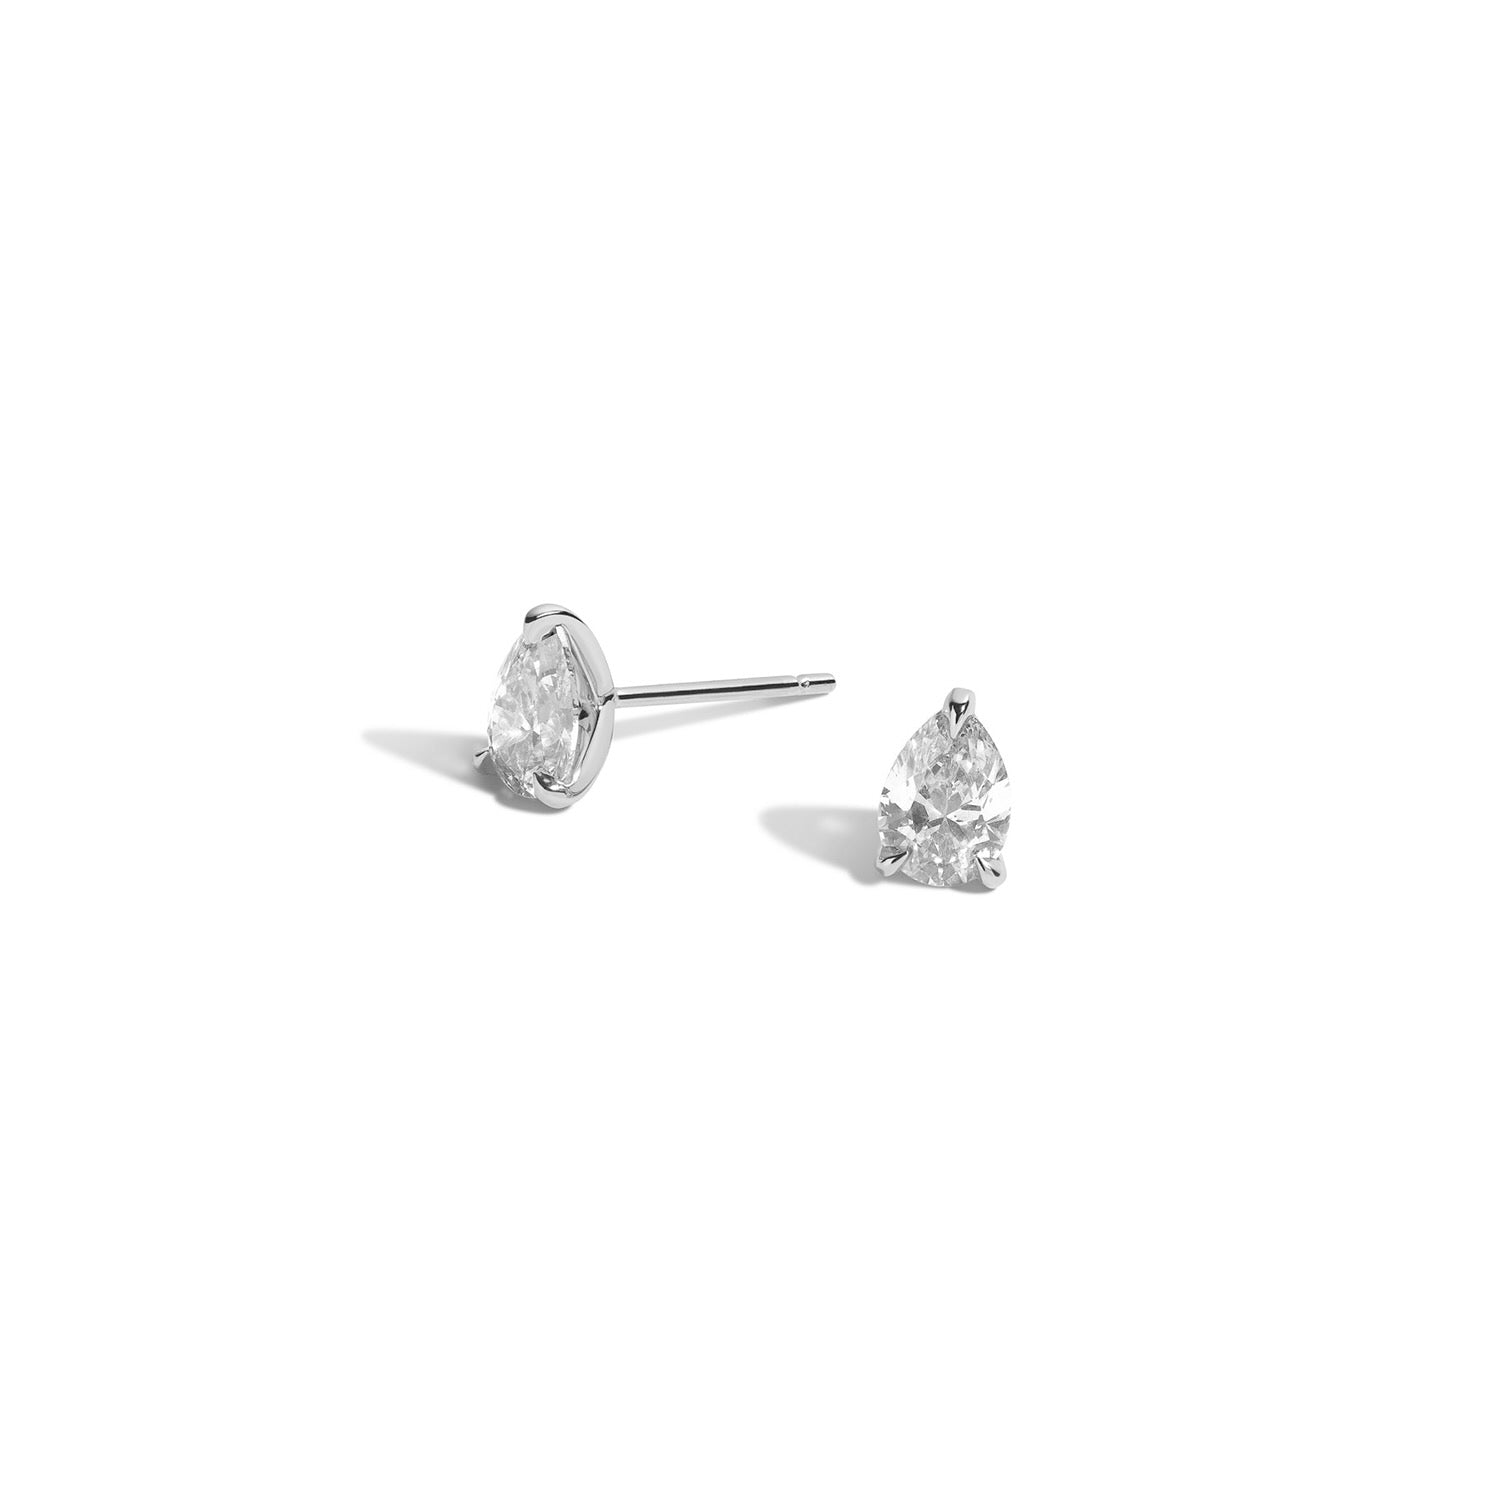 Shahla Karimi Medium Pear Diamond Earrings in 14K White Gold